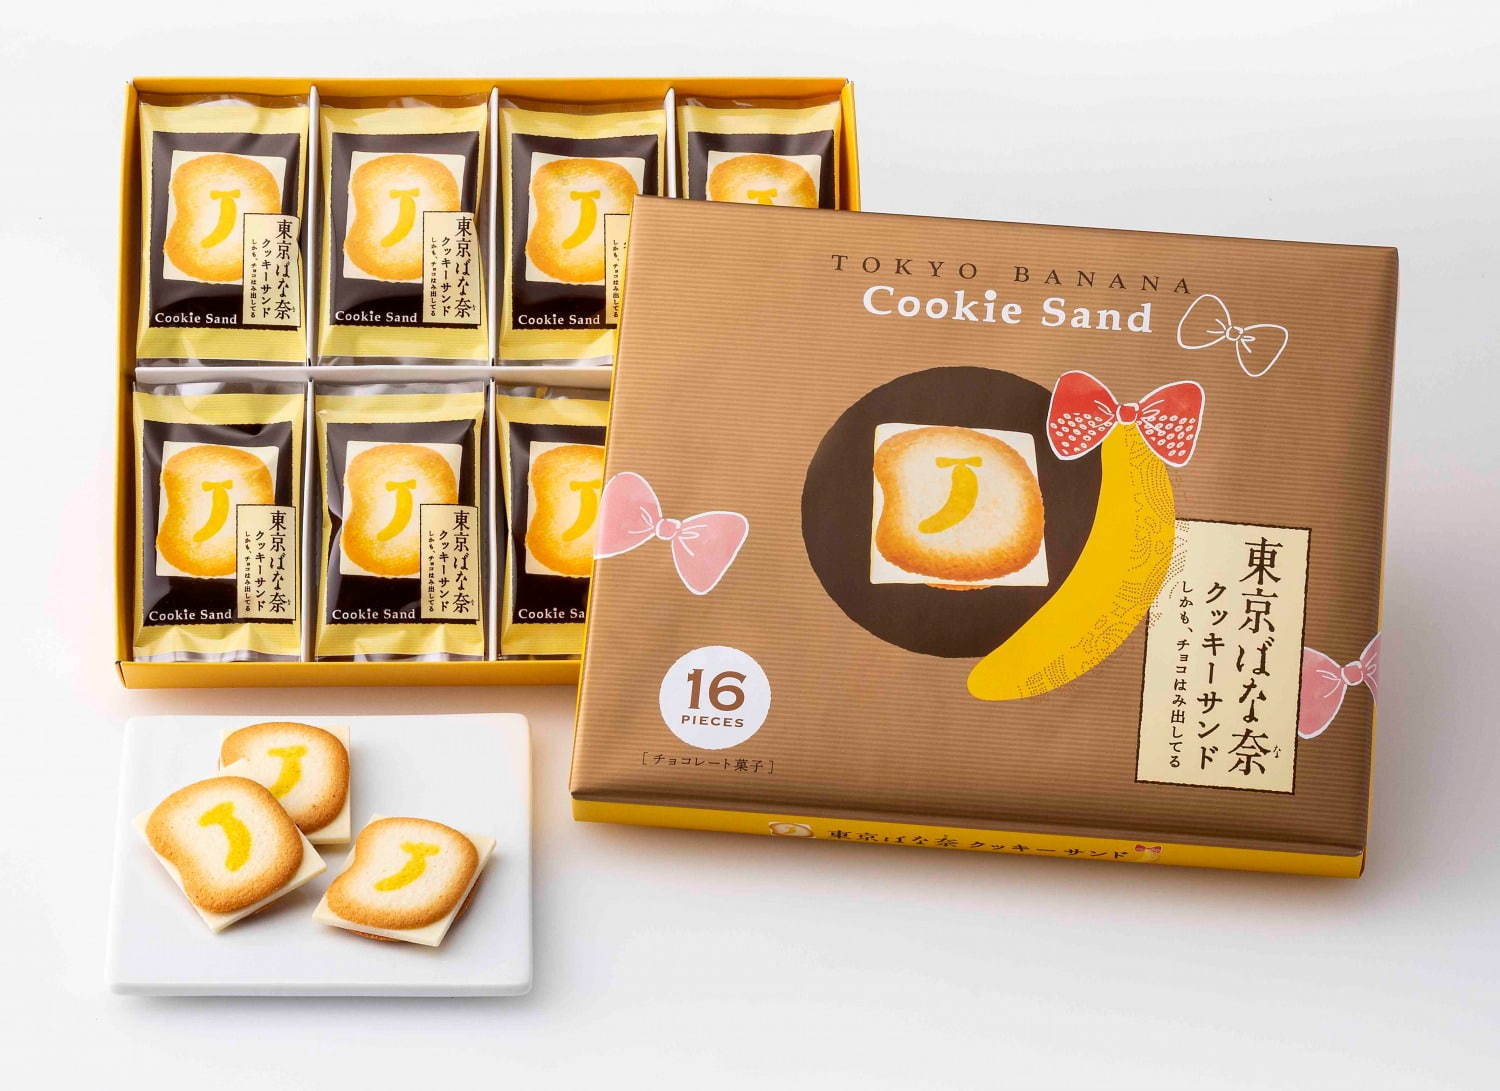 第7位「東京ばな奈クッキーサンド しかも、チョコはみ出してる」12枚入 885円(税込)